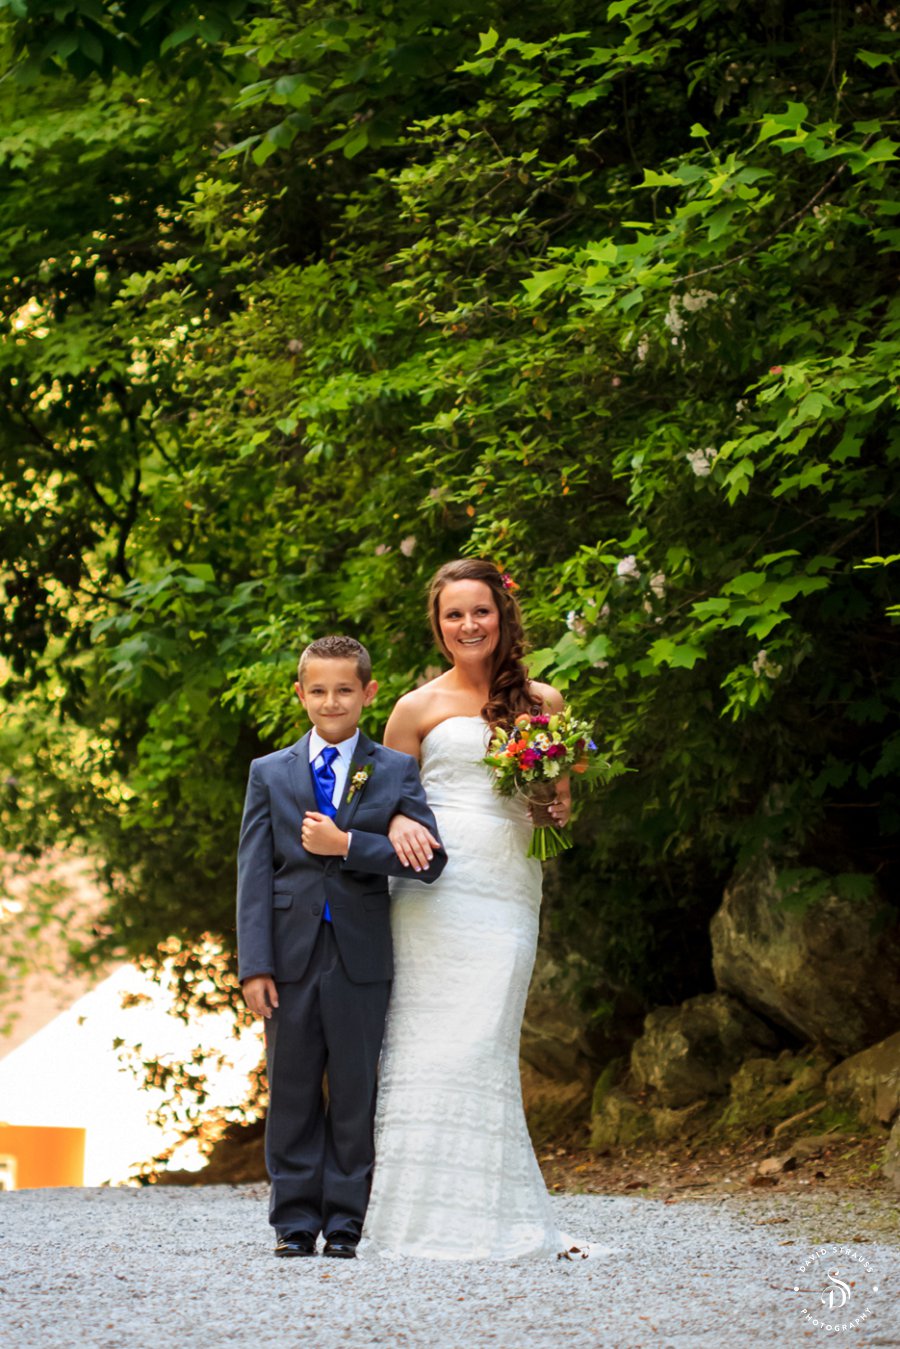 Toccoa Falls Wedding - GA Photographer - Jonathan and Lacy -4